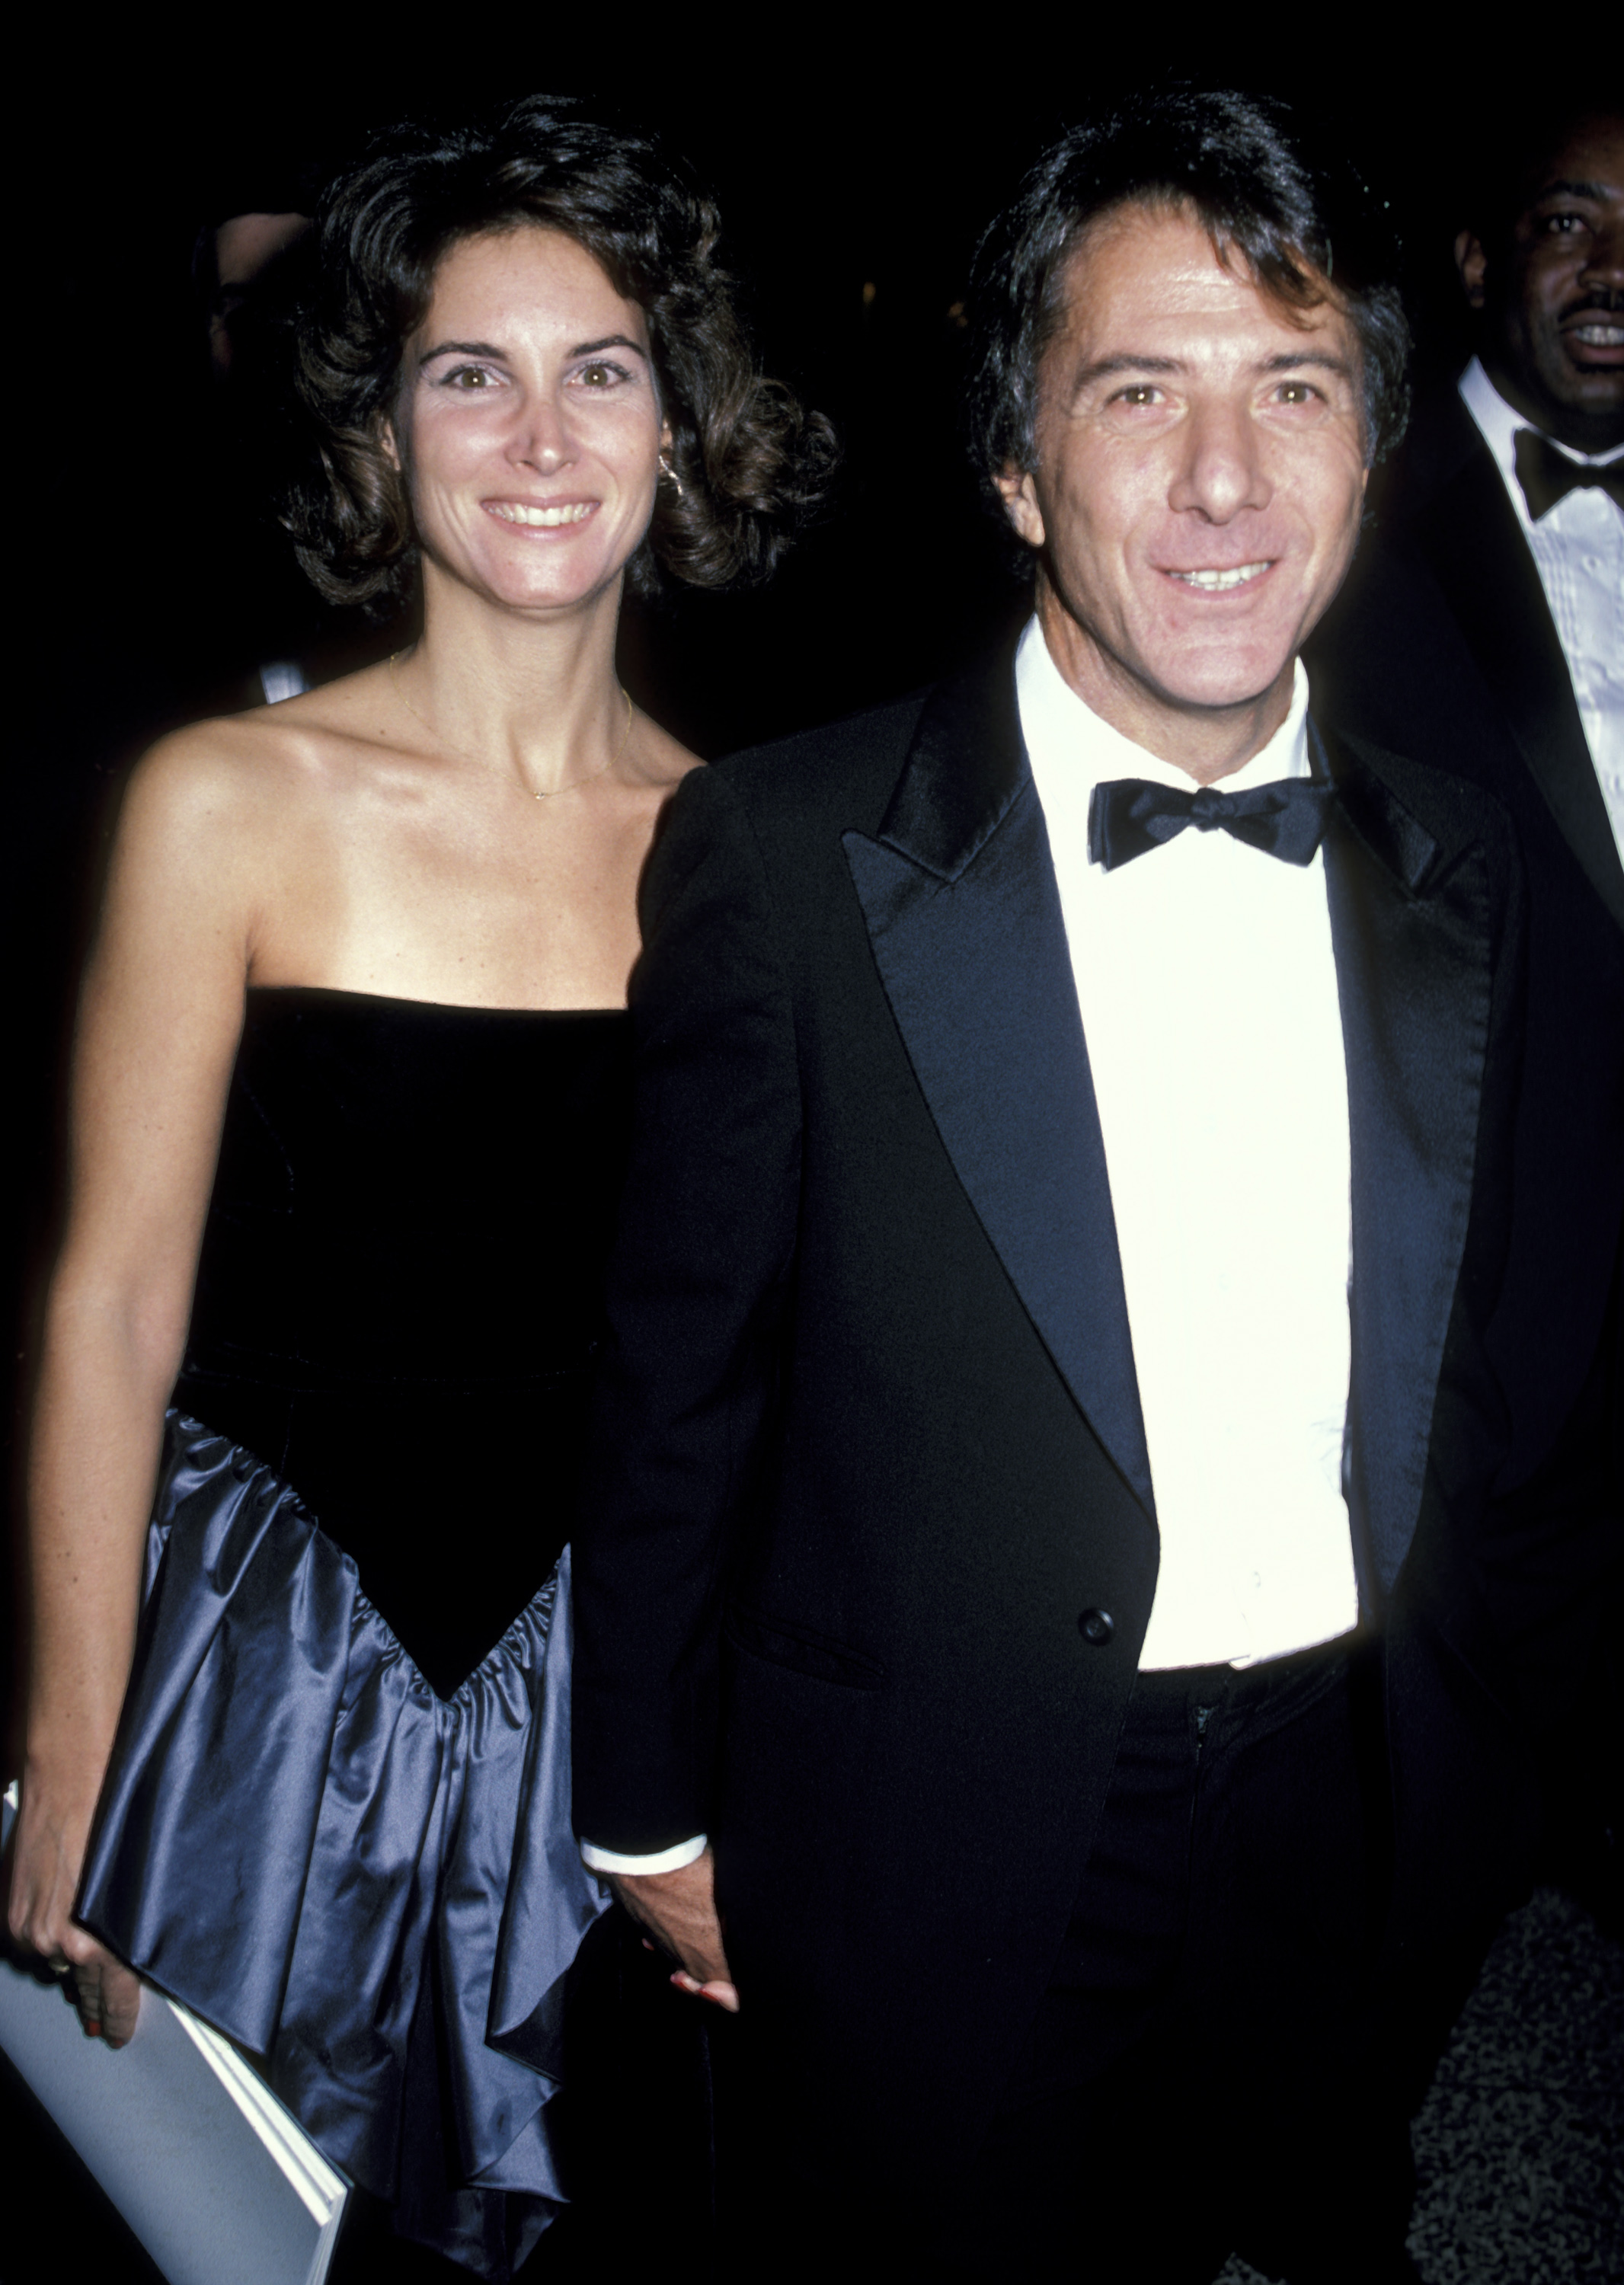 Die Frau und der Schauspieler während der "The Mission" Premiere - After Party in New York City am 30. Oktober 1986. | Quelle: Getty Images